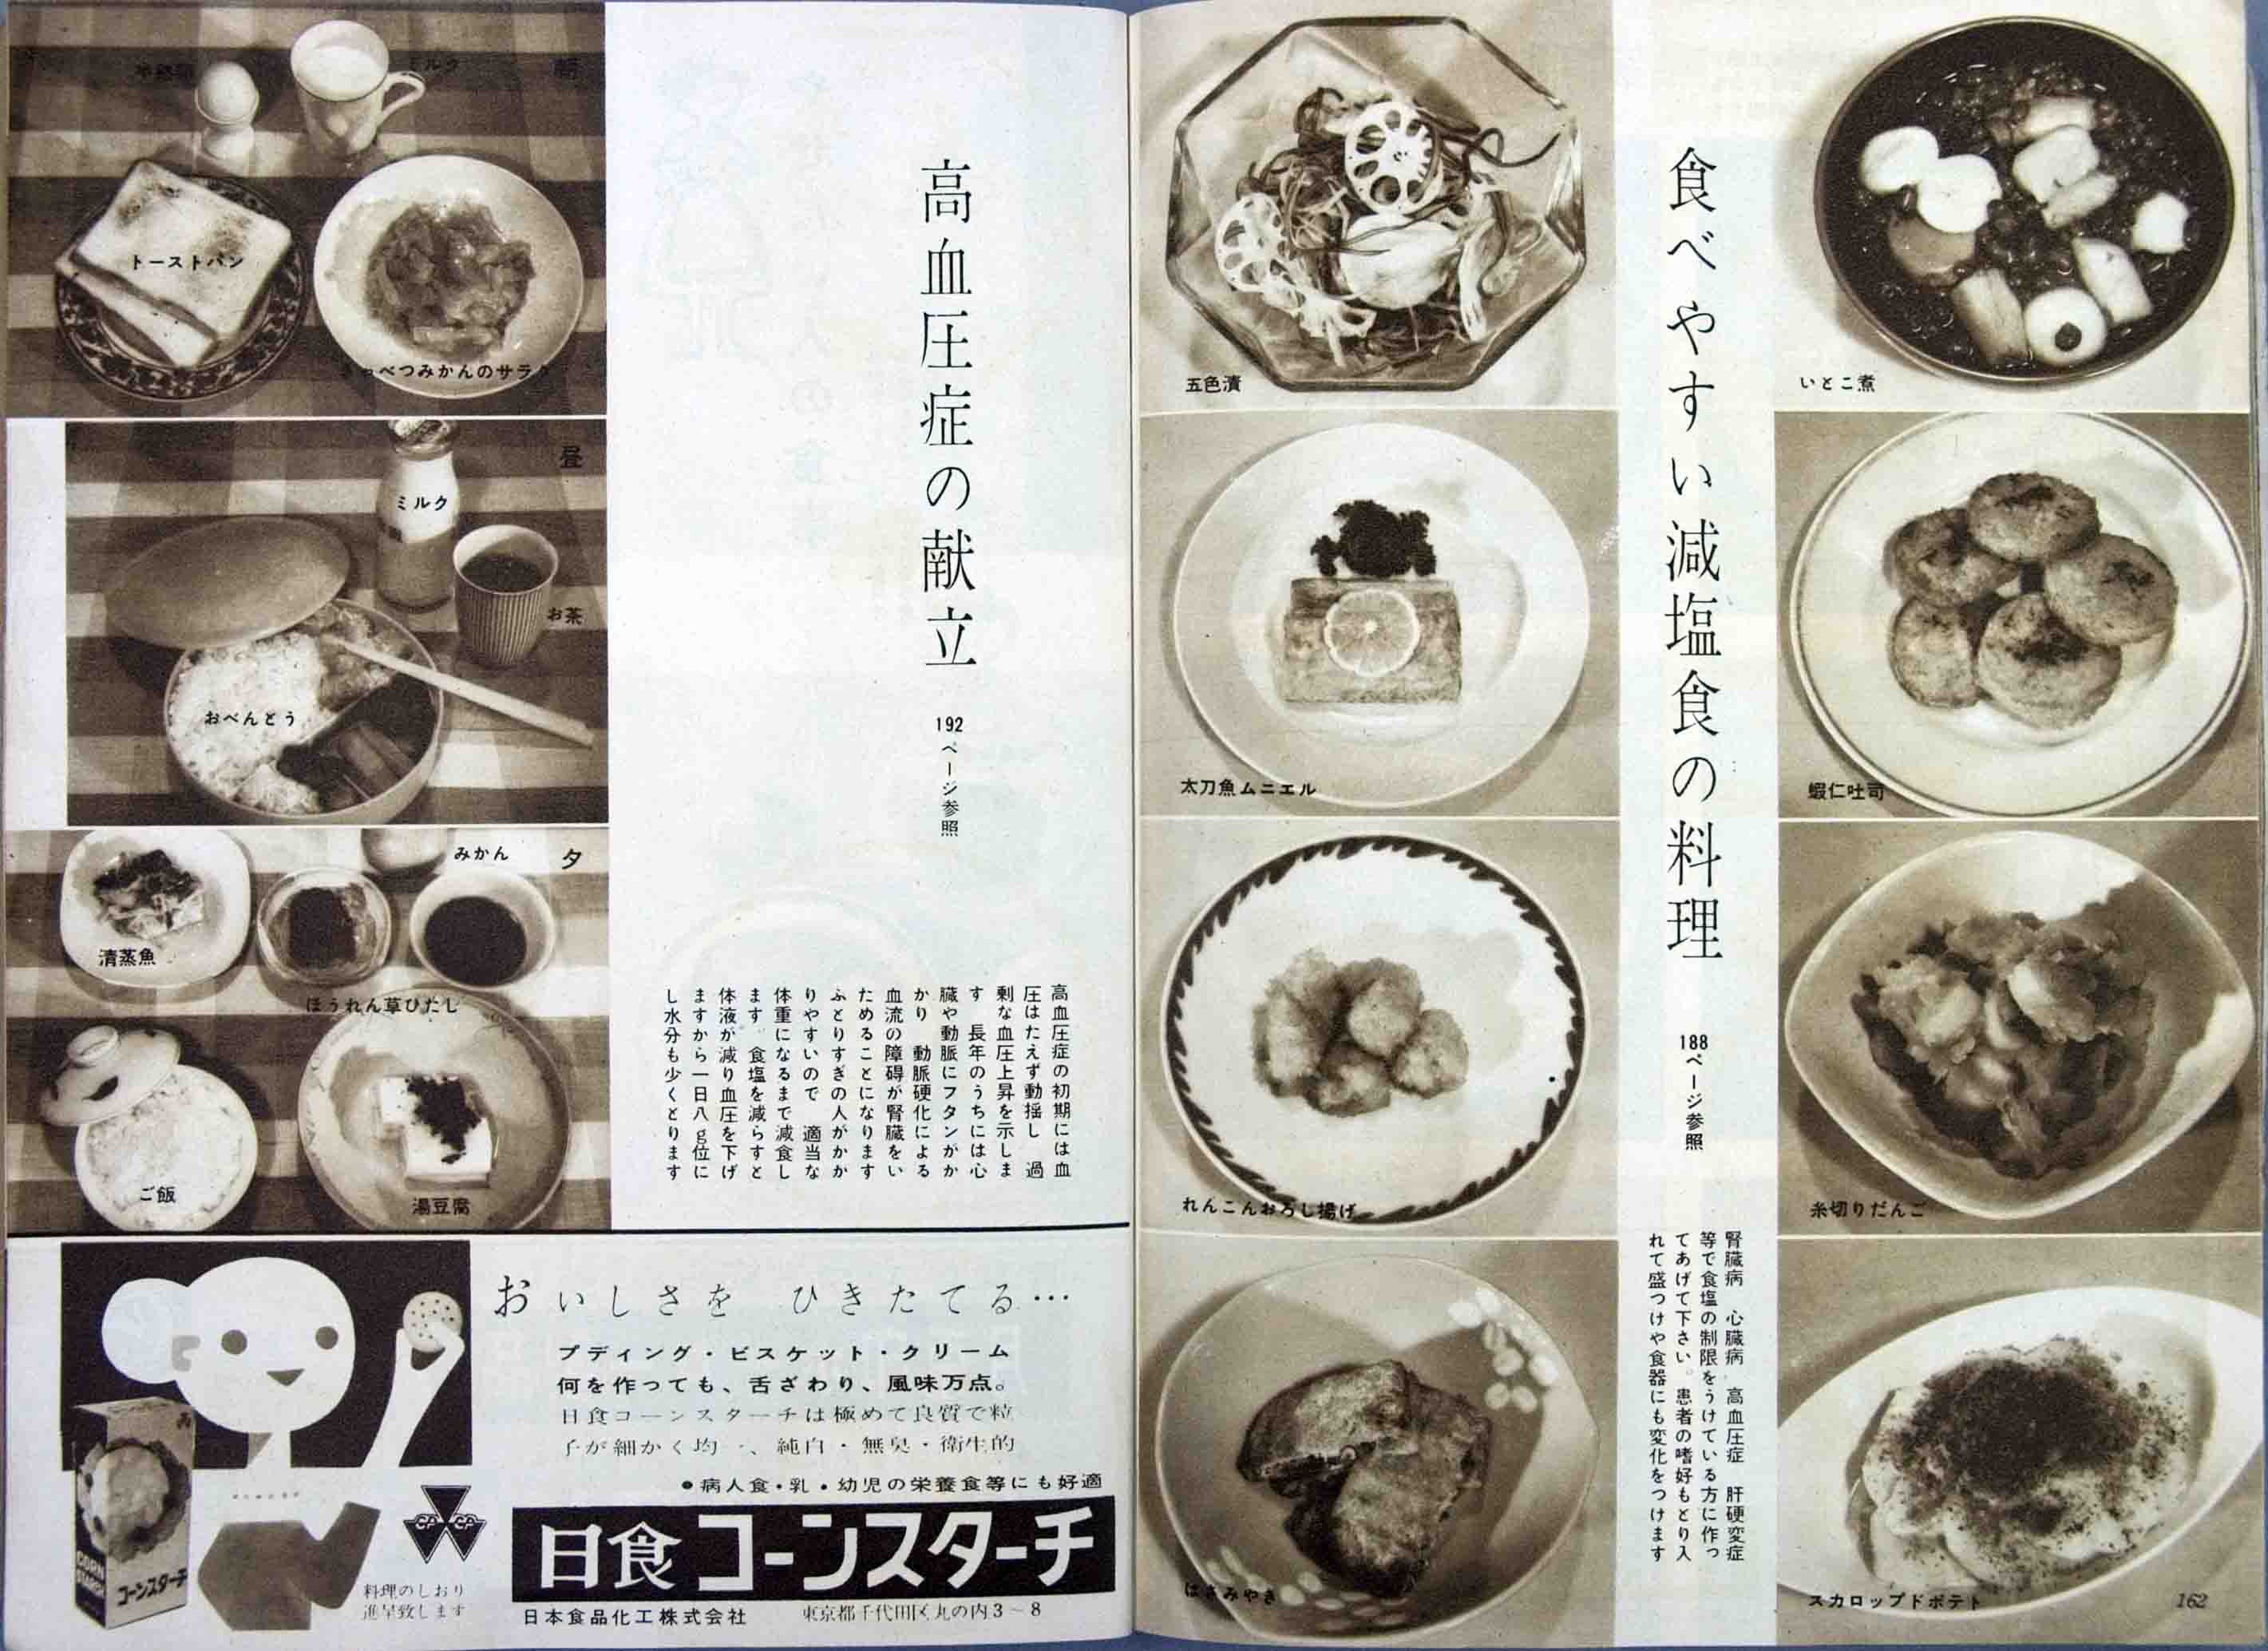 栄養と料理デジタルアーカイブス 昭和33年 1958年 1月第24巻第1号